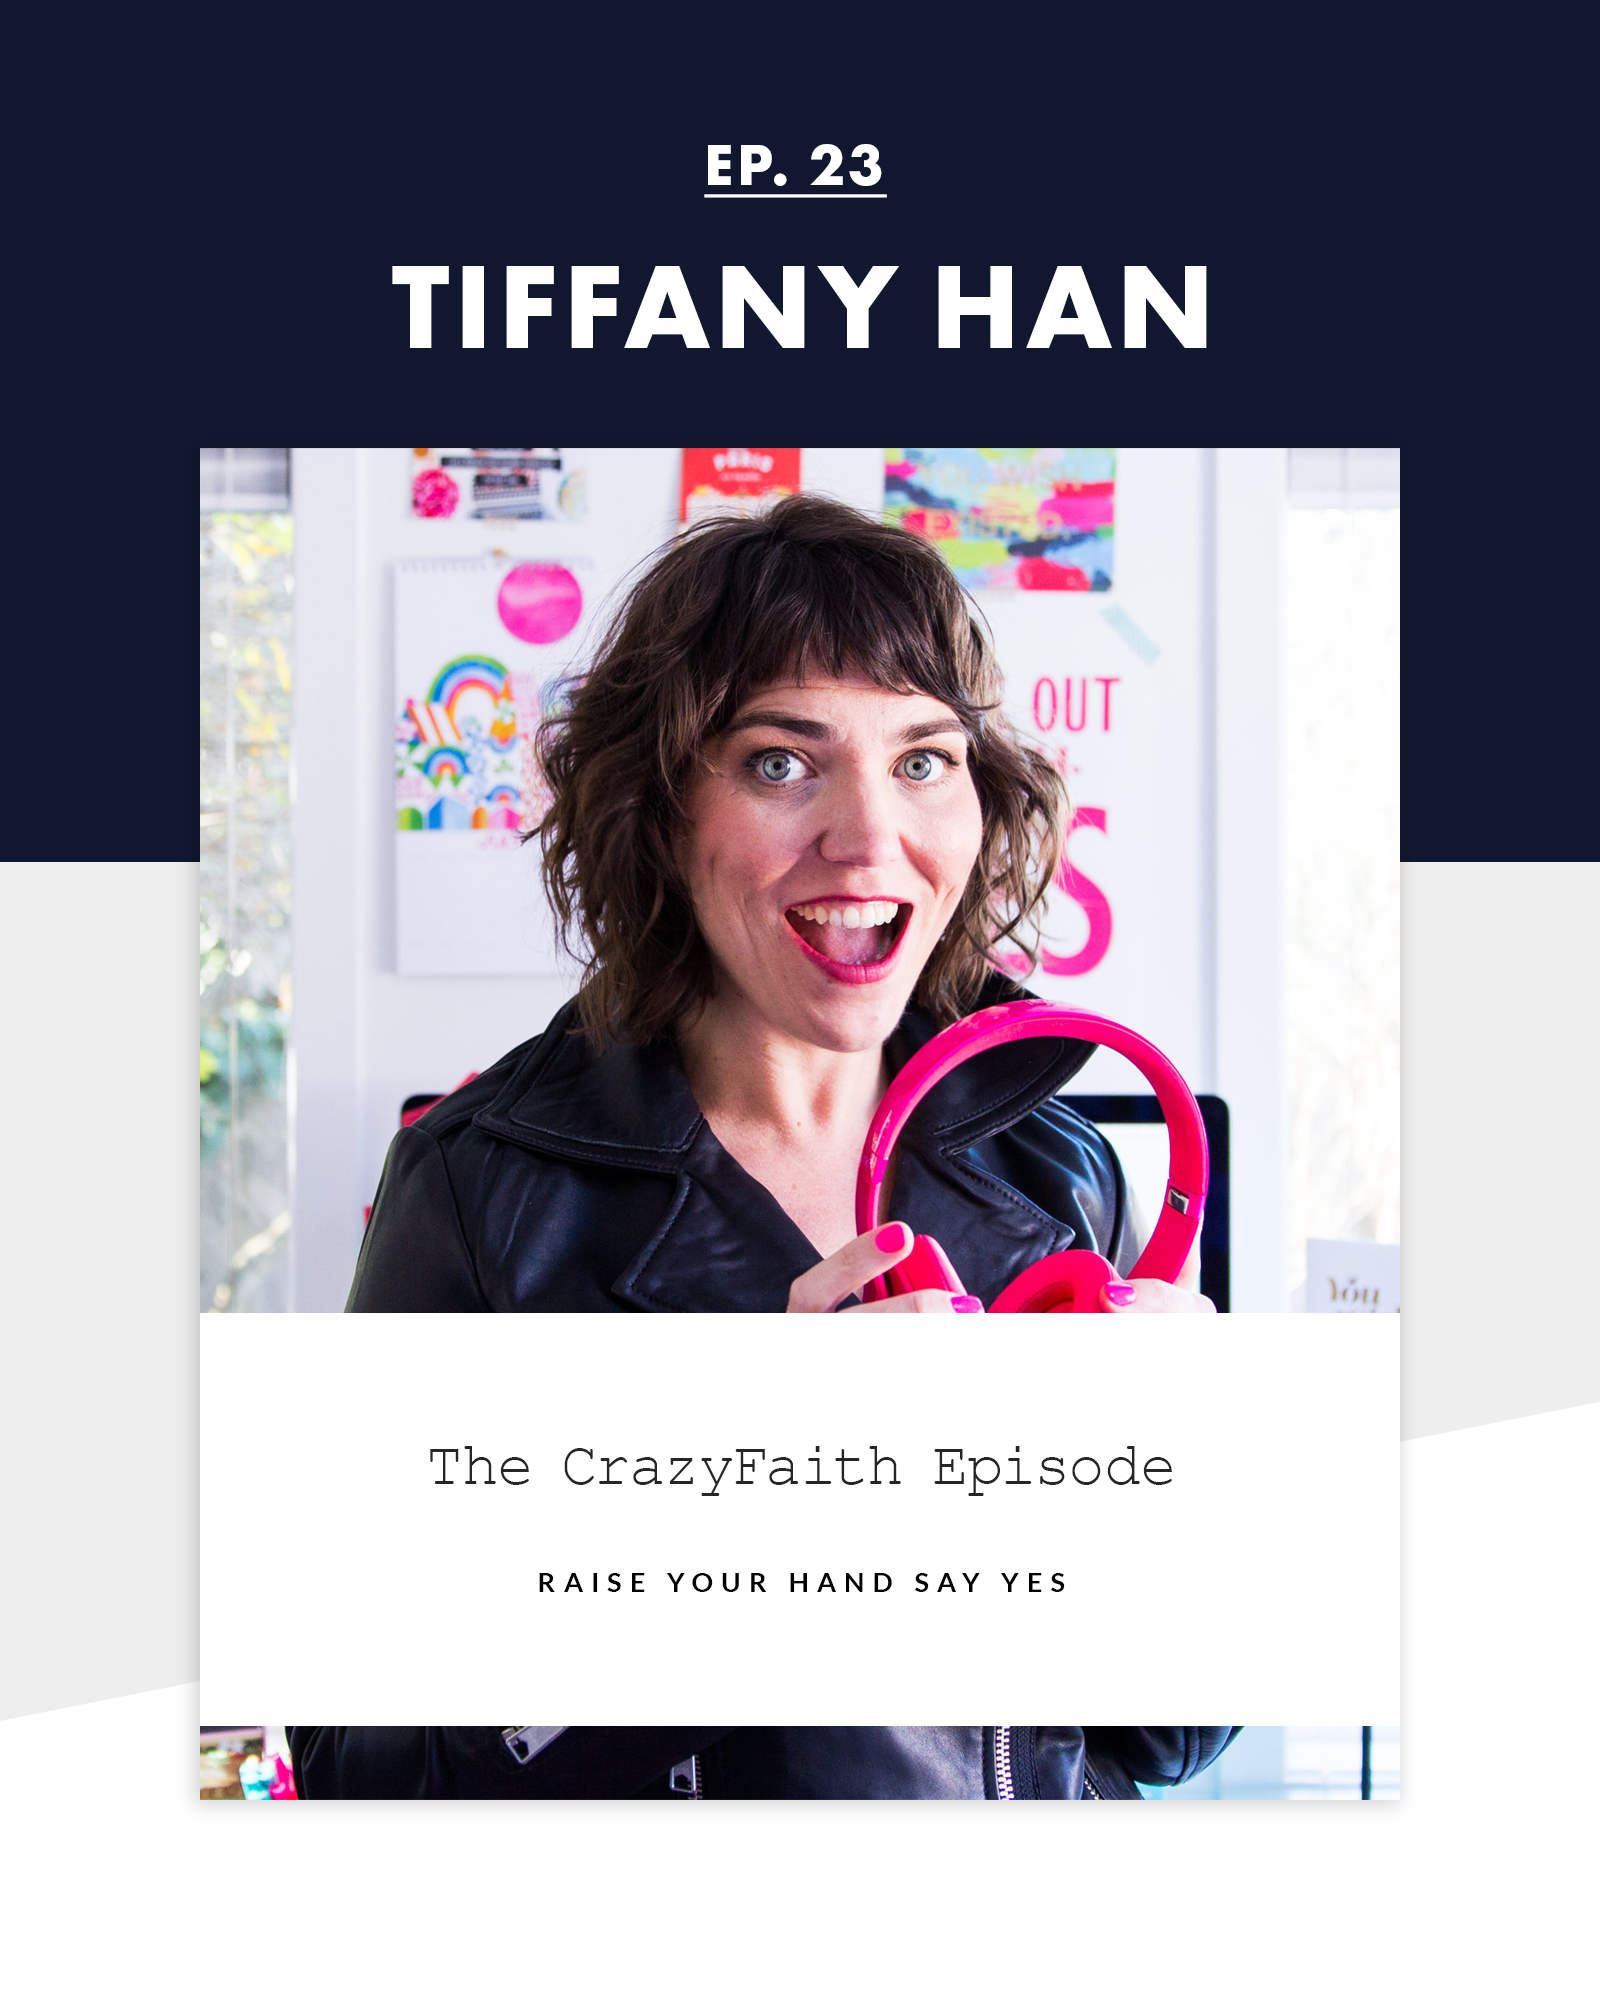 Tiffany Han and Crazyfaith